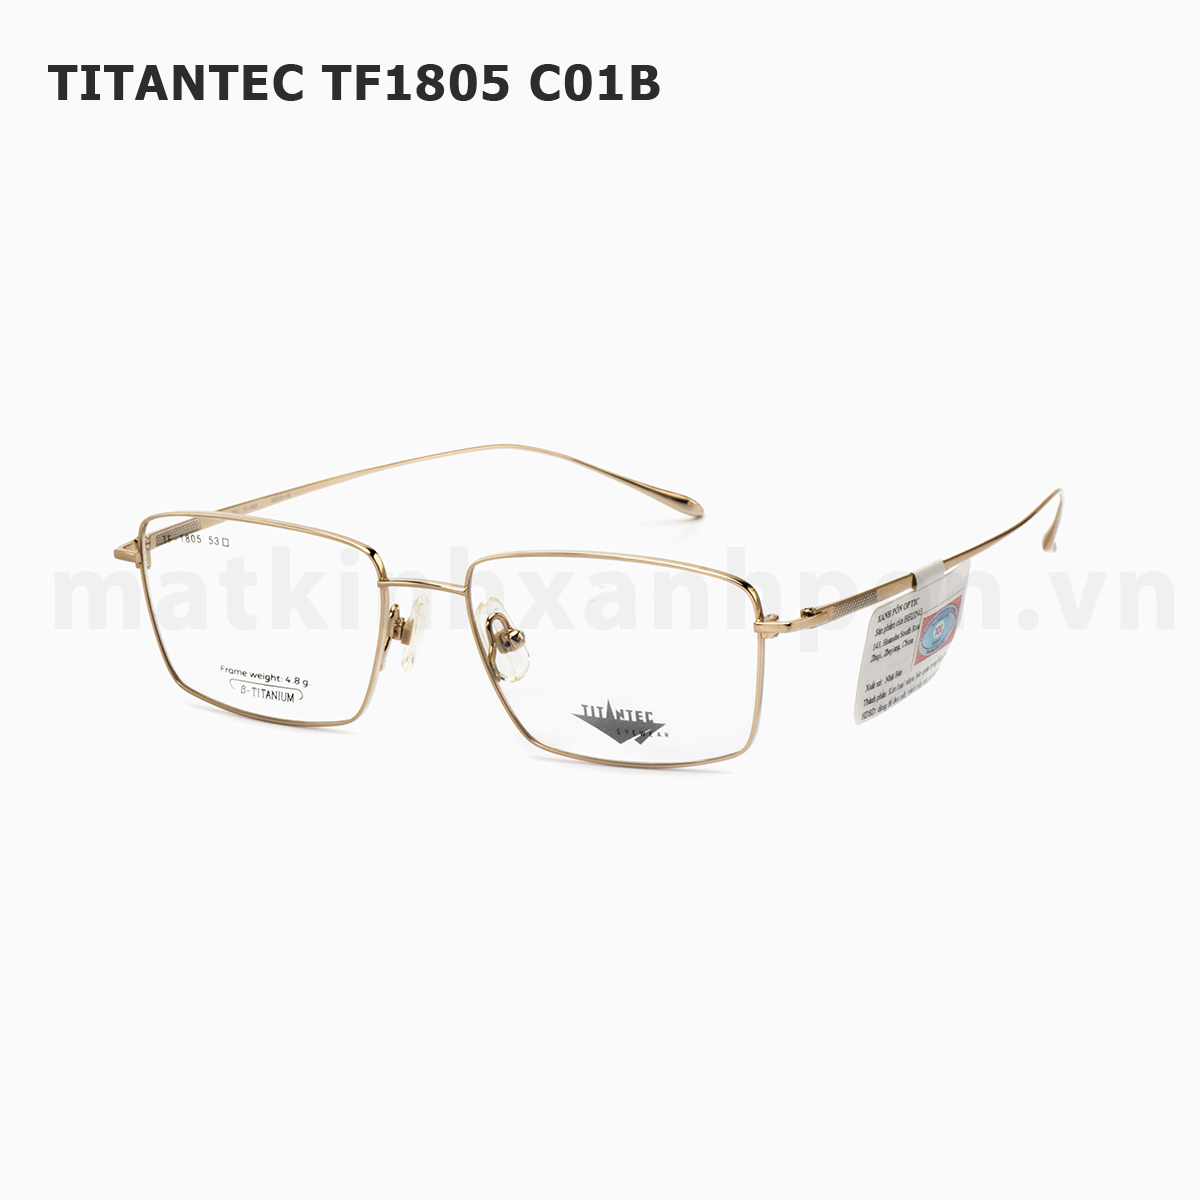 Titantec TF1805 C01B